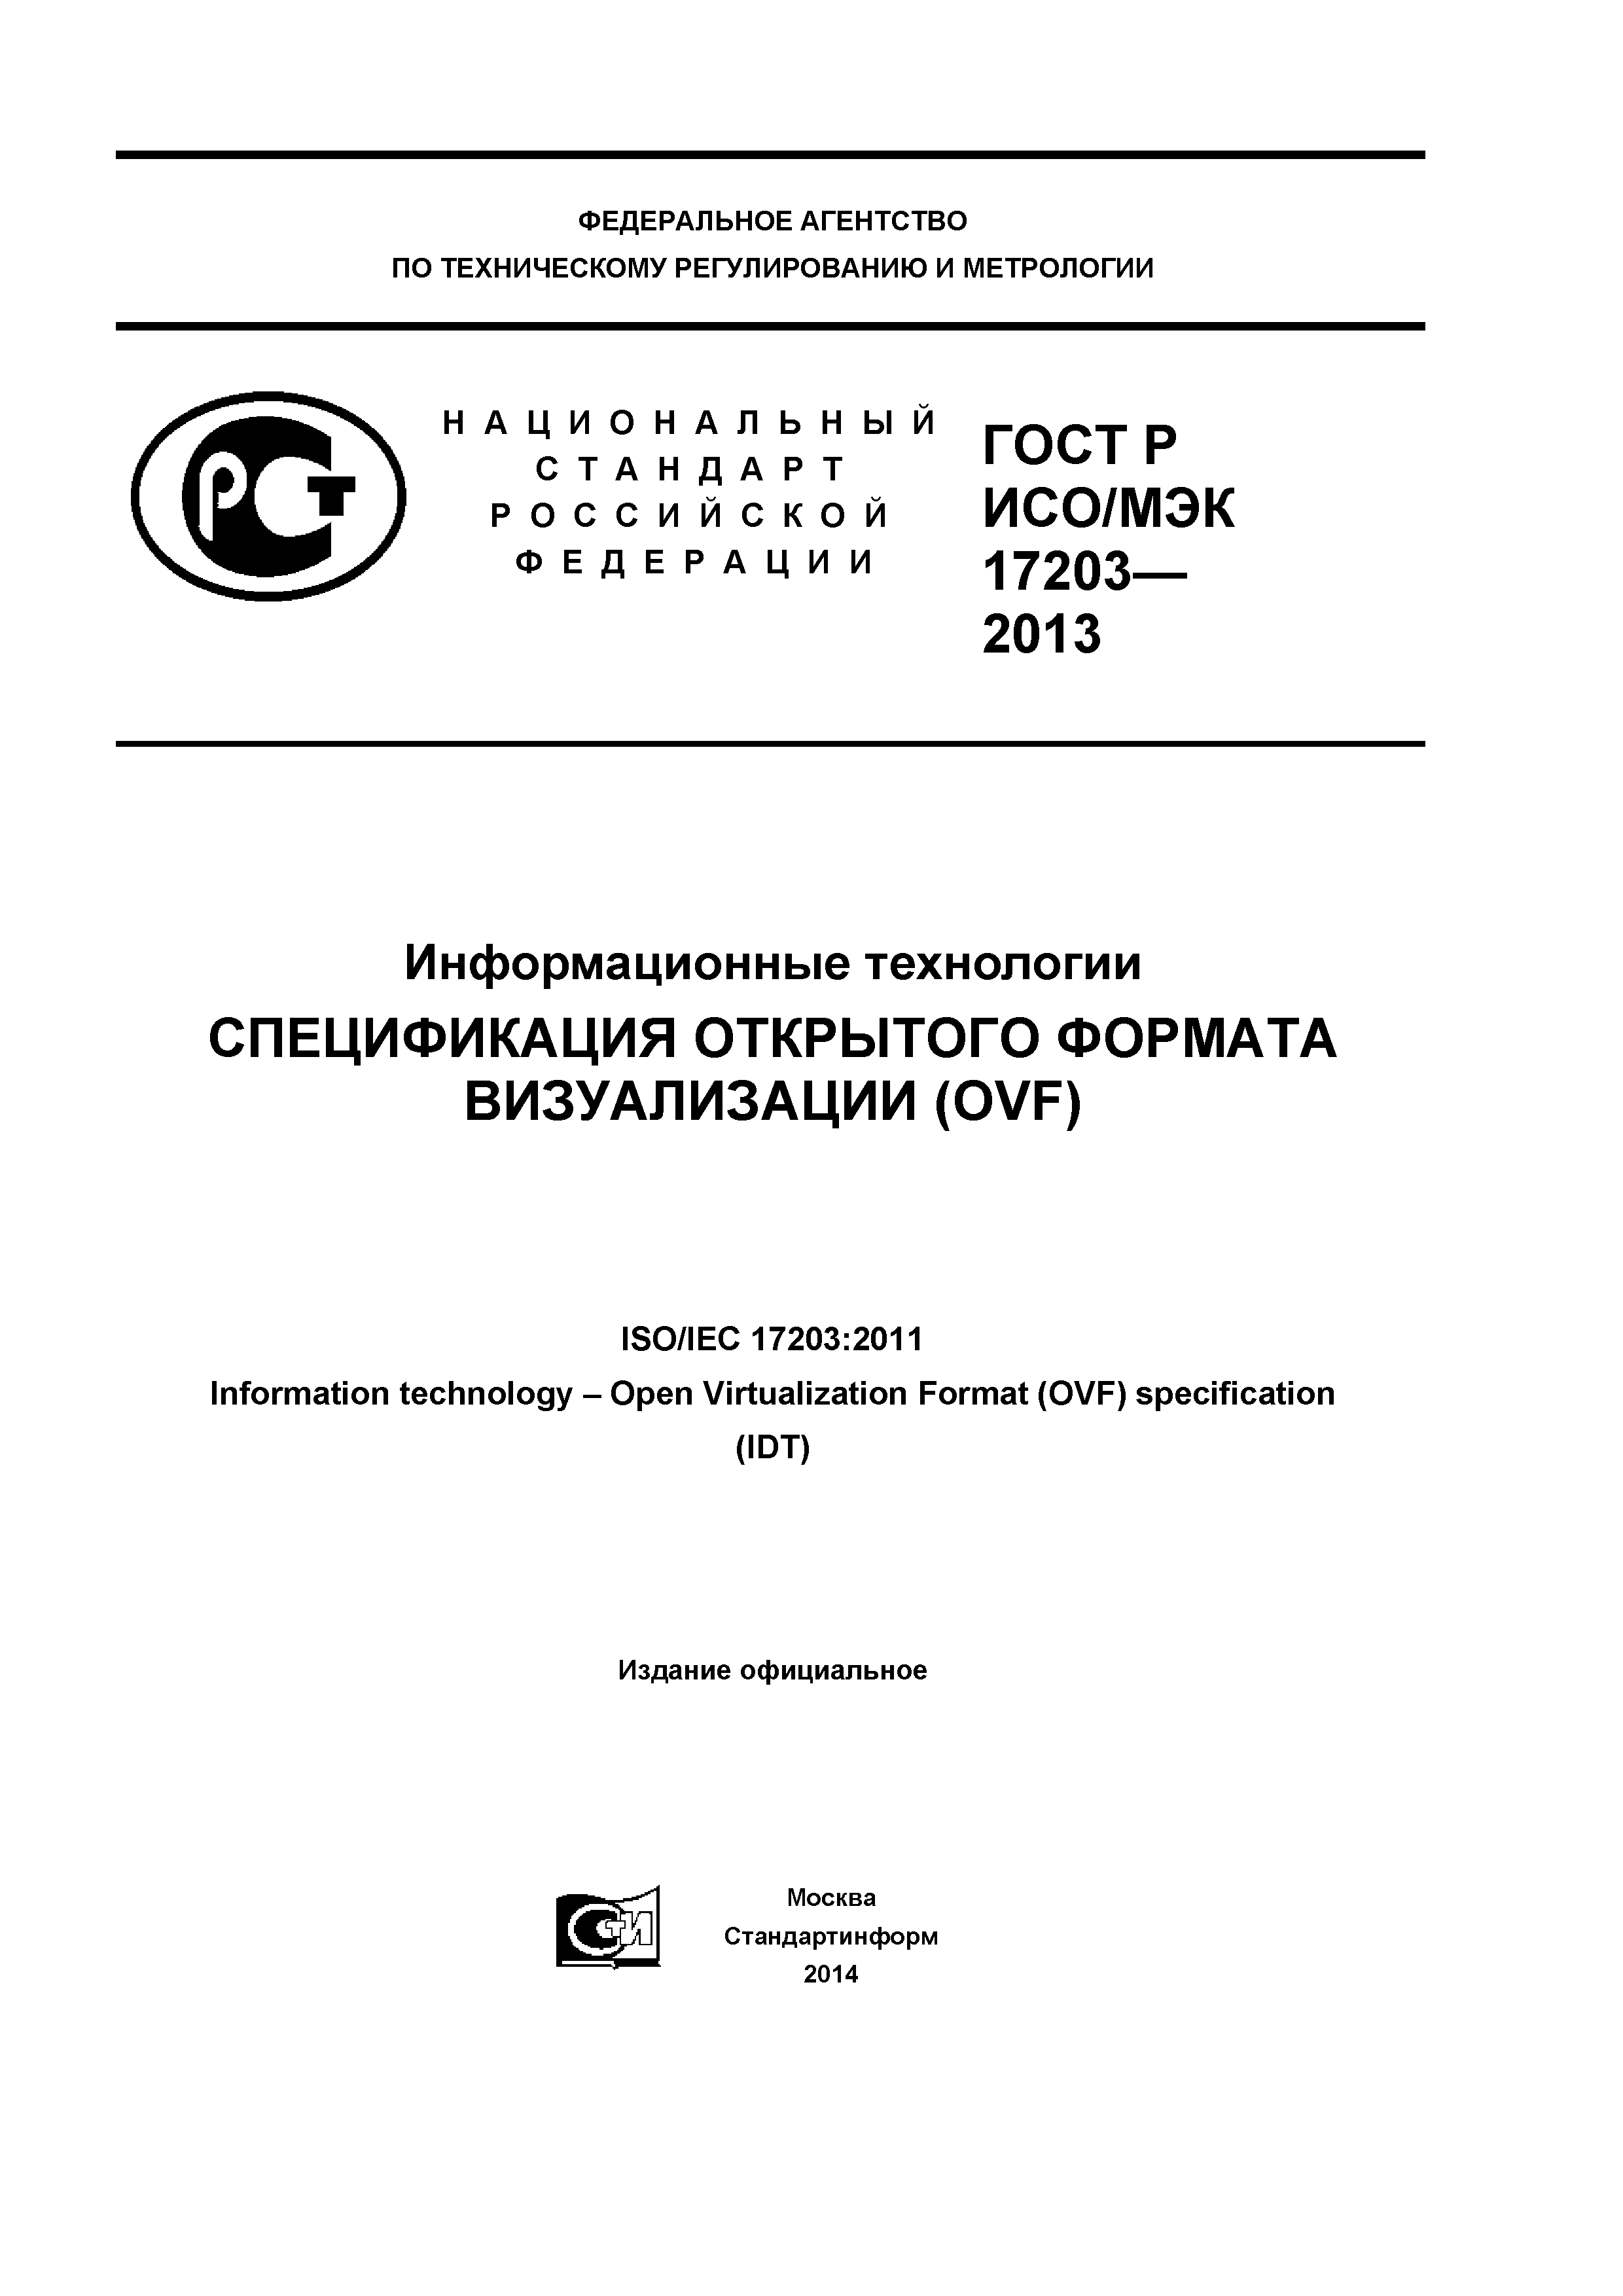 ГОСТ Р ИСО/МЭК 17203-2013